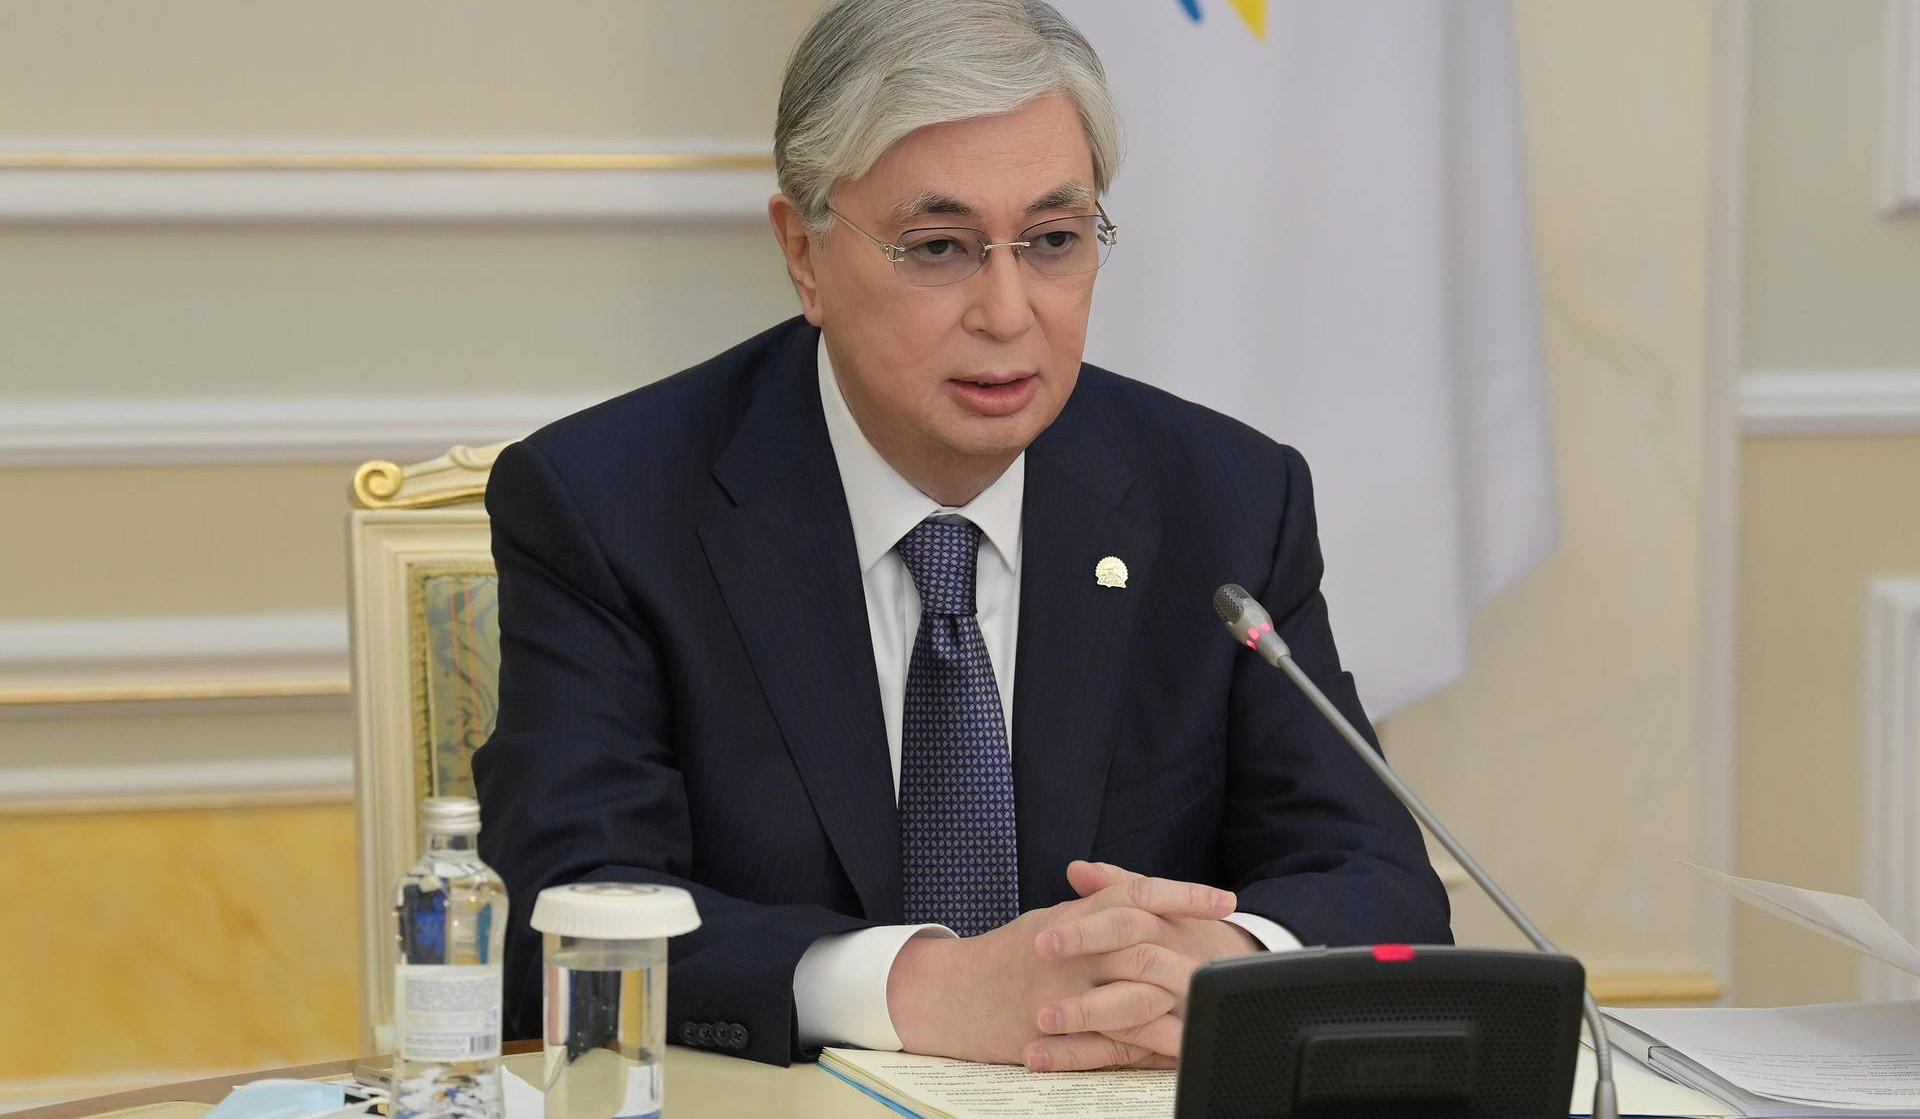 Տոկաևն ընտրվել է Ղազախստանի իշխող կուսակցության նախագահ՝ փոխարինելով Նազարբաևին